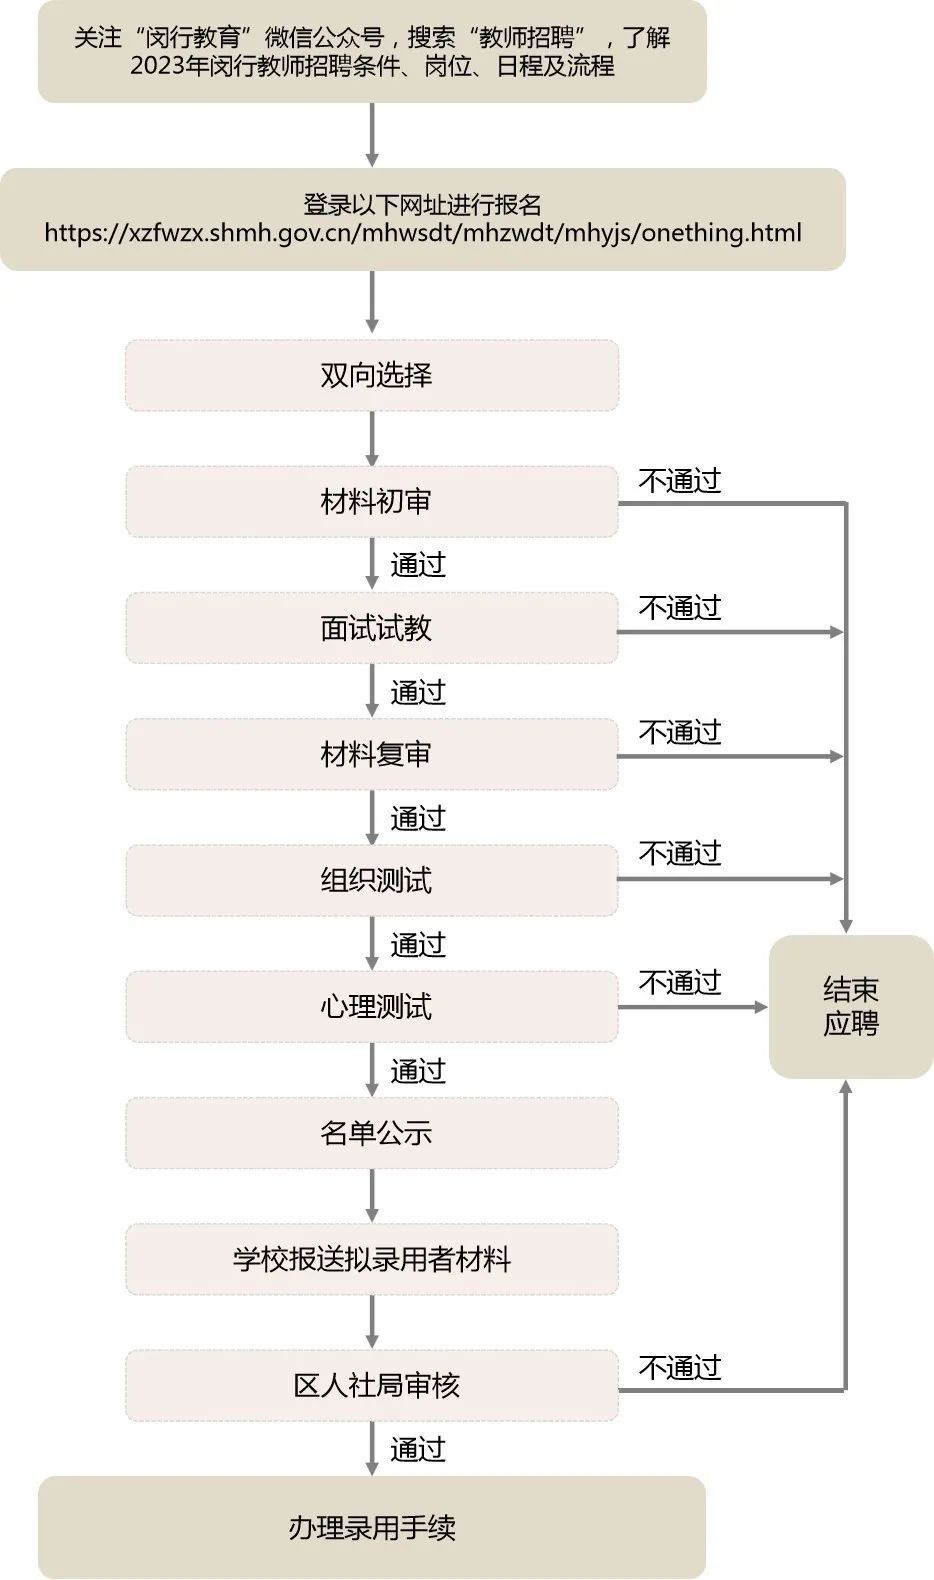 2023年上海市闵行区第二批教师招聘公告(795人)